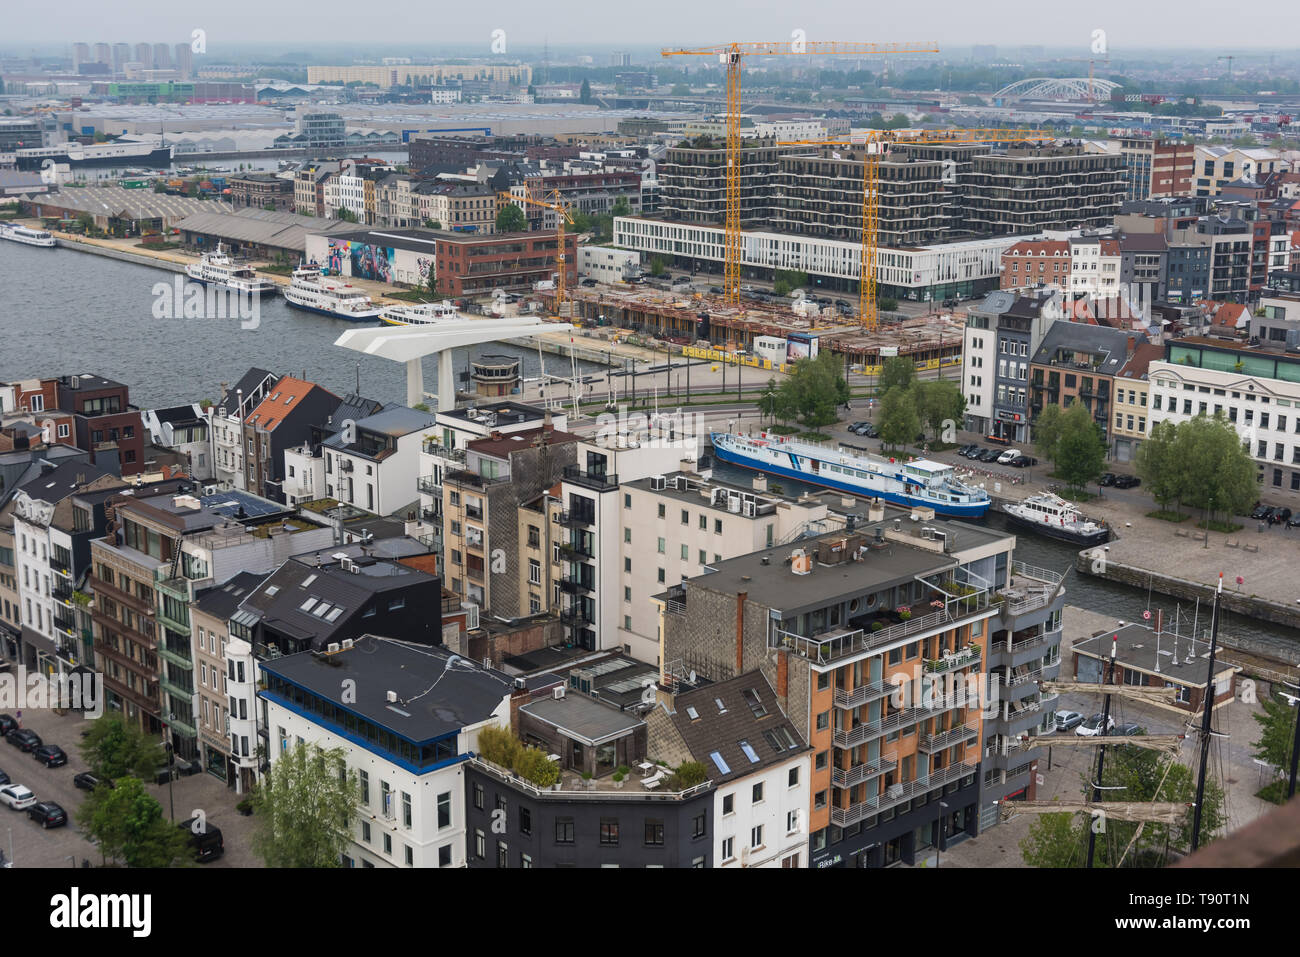 Antwerpen, Hafen - Antwerp, Harbour Stock Photo